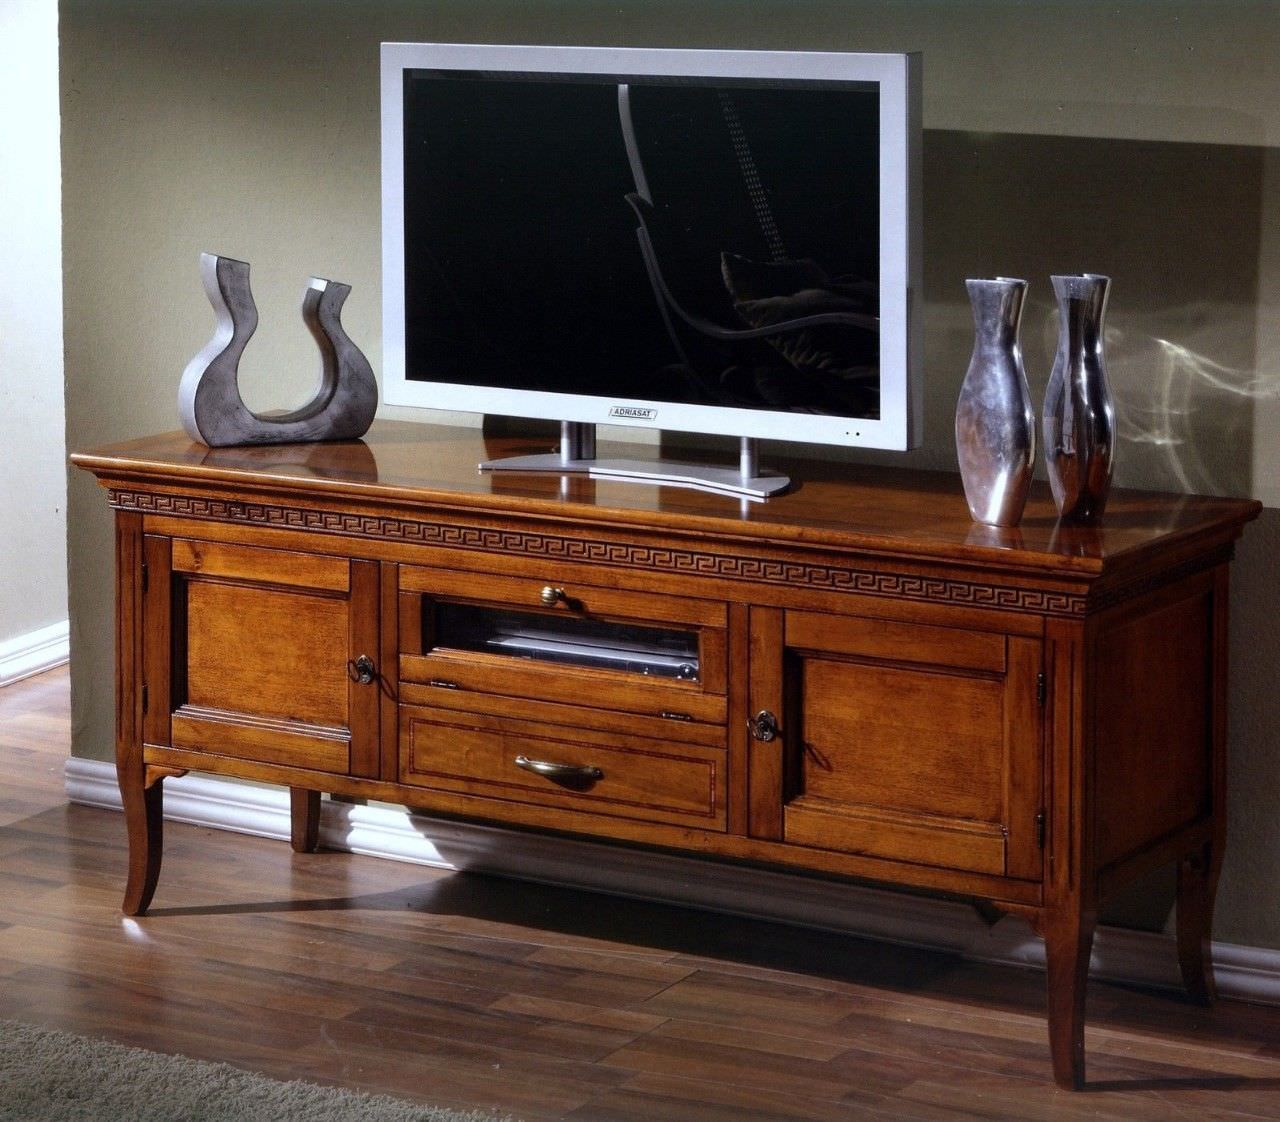 Mẫu kệ tivi gỗ sồi cổ điển đơn giản, sang trọng cho phòng khách.